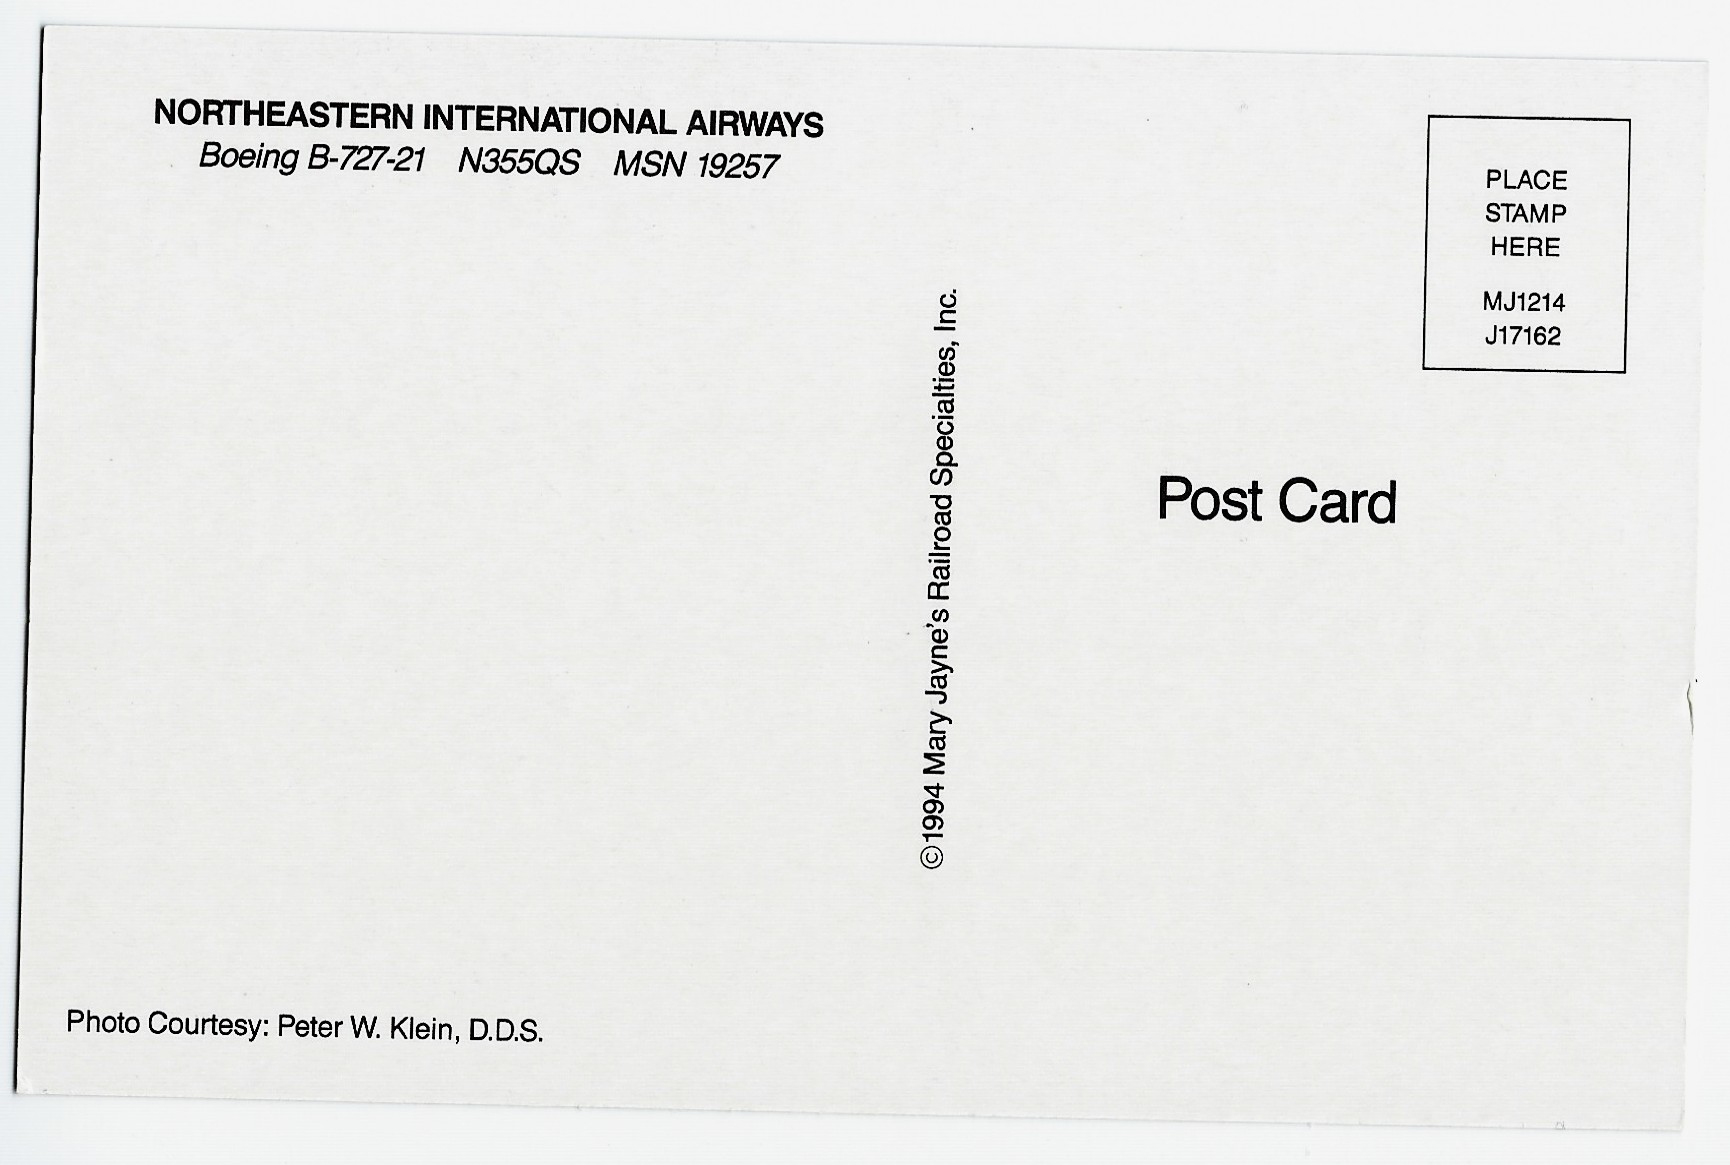 NORTHEASTERN INTERNATIONAL AIRWAYS Airplane Postcard J17162